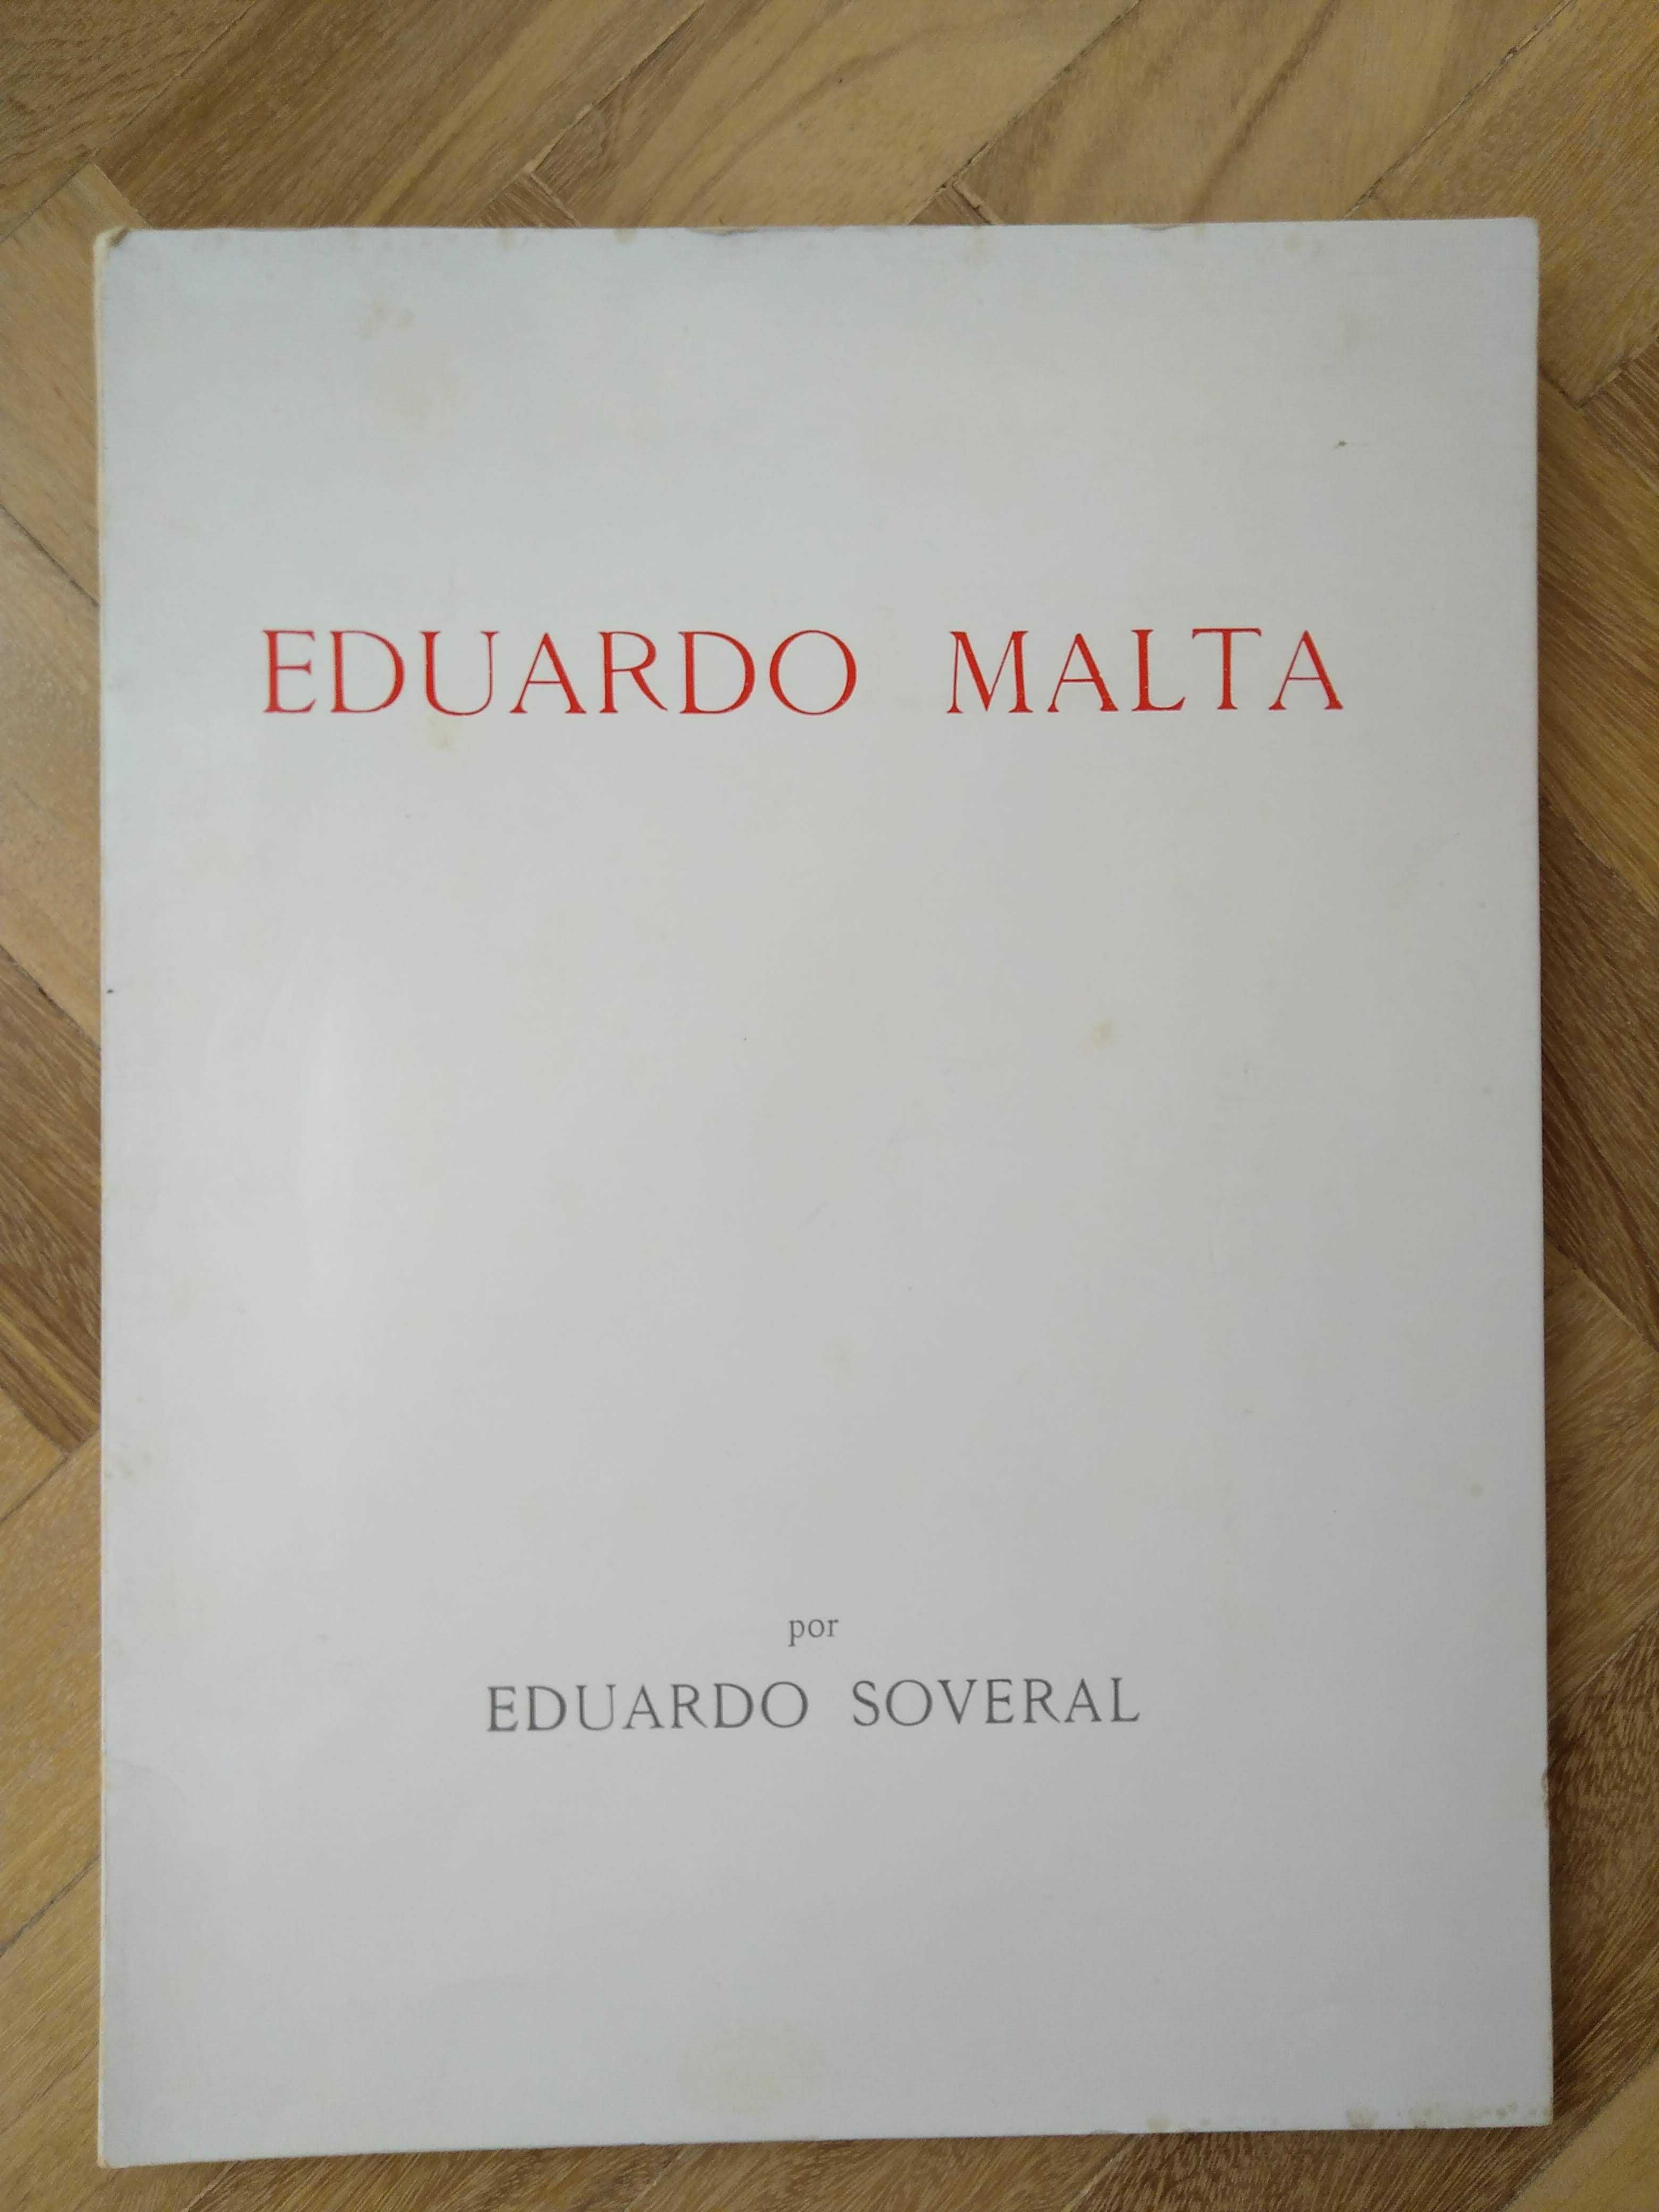 Livro "Eduardo Malta", de Eduardo Soveral